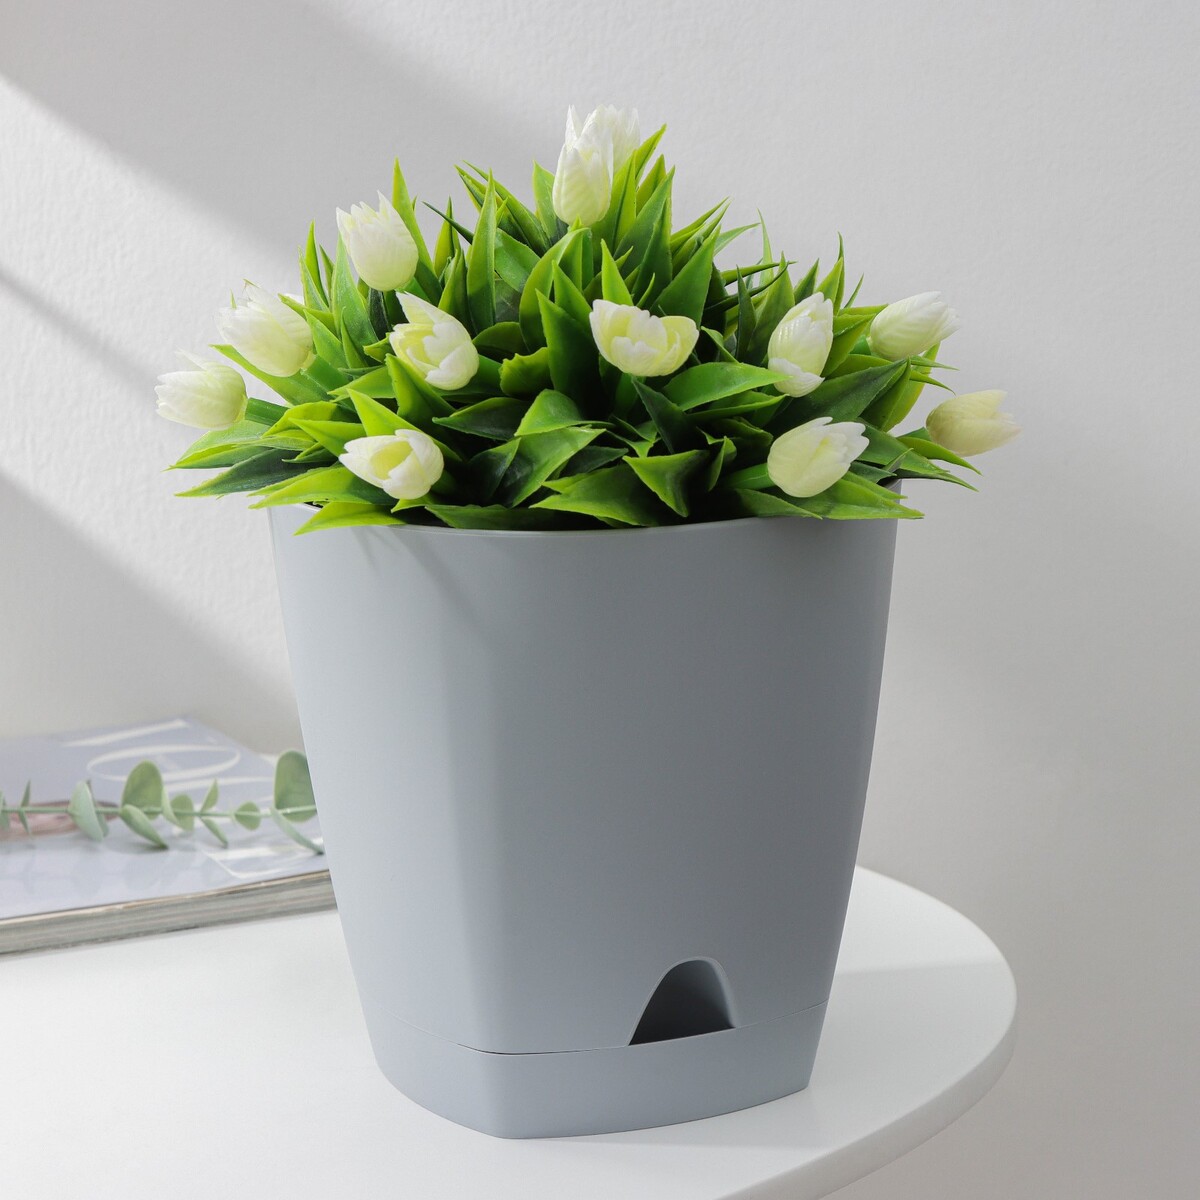 Горшок для цветов с прикорневым поливом amsterdam, 2,5 л, d=17 см, h=16,5 см, цвет серый амстердам amsterdam